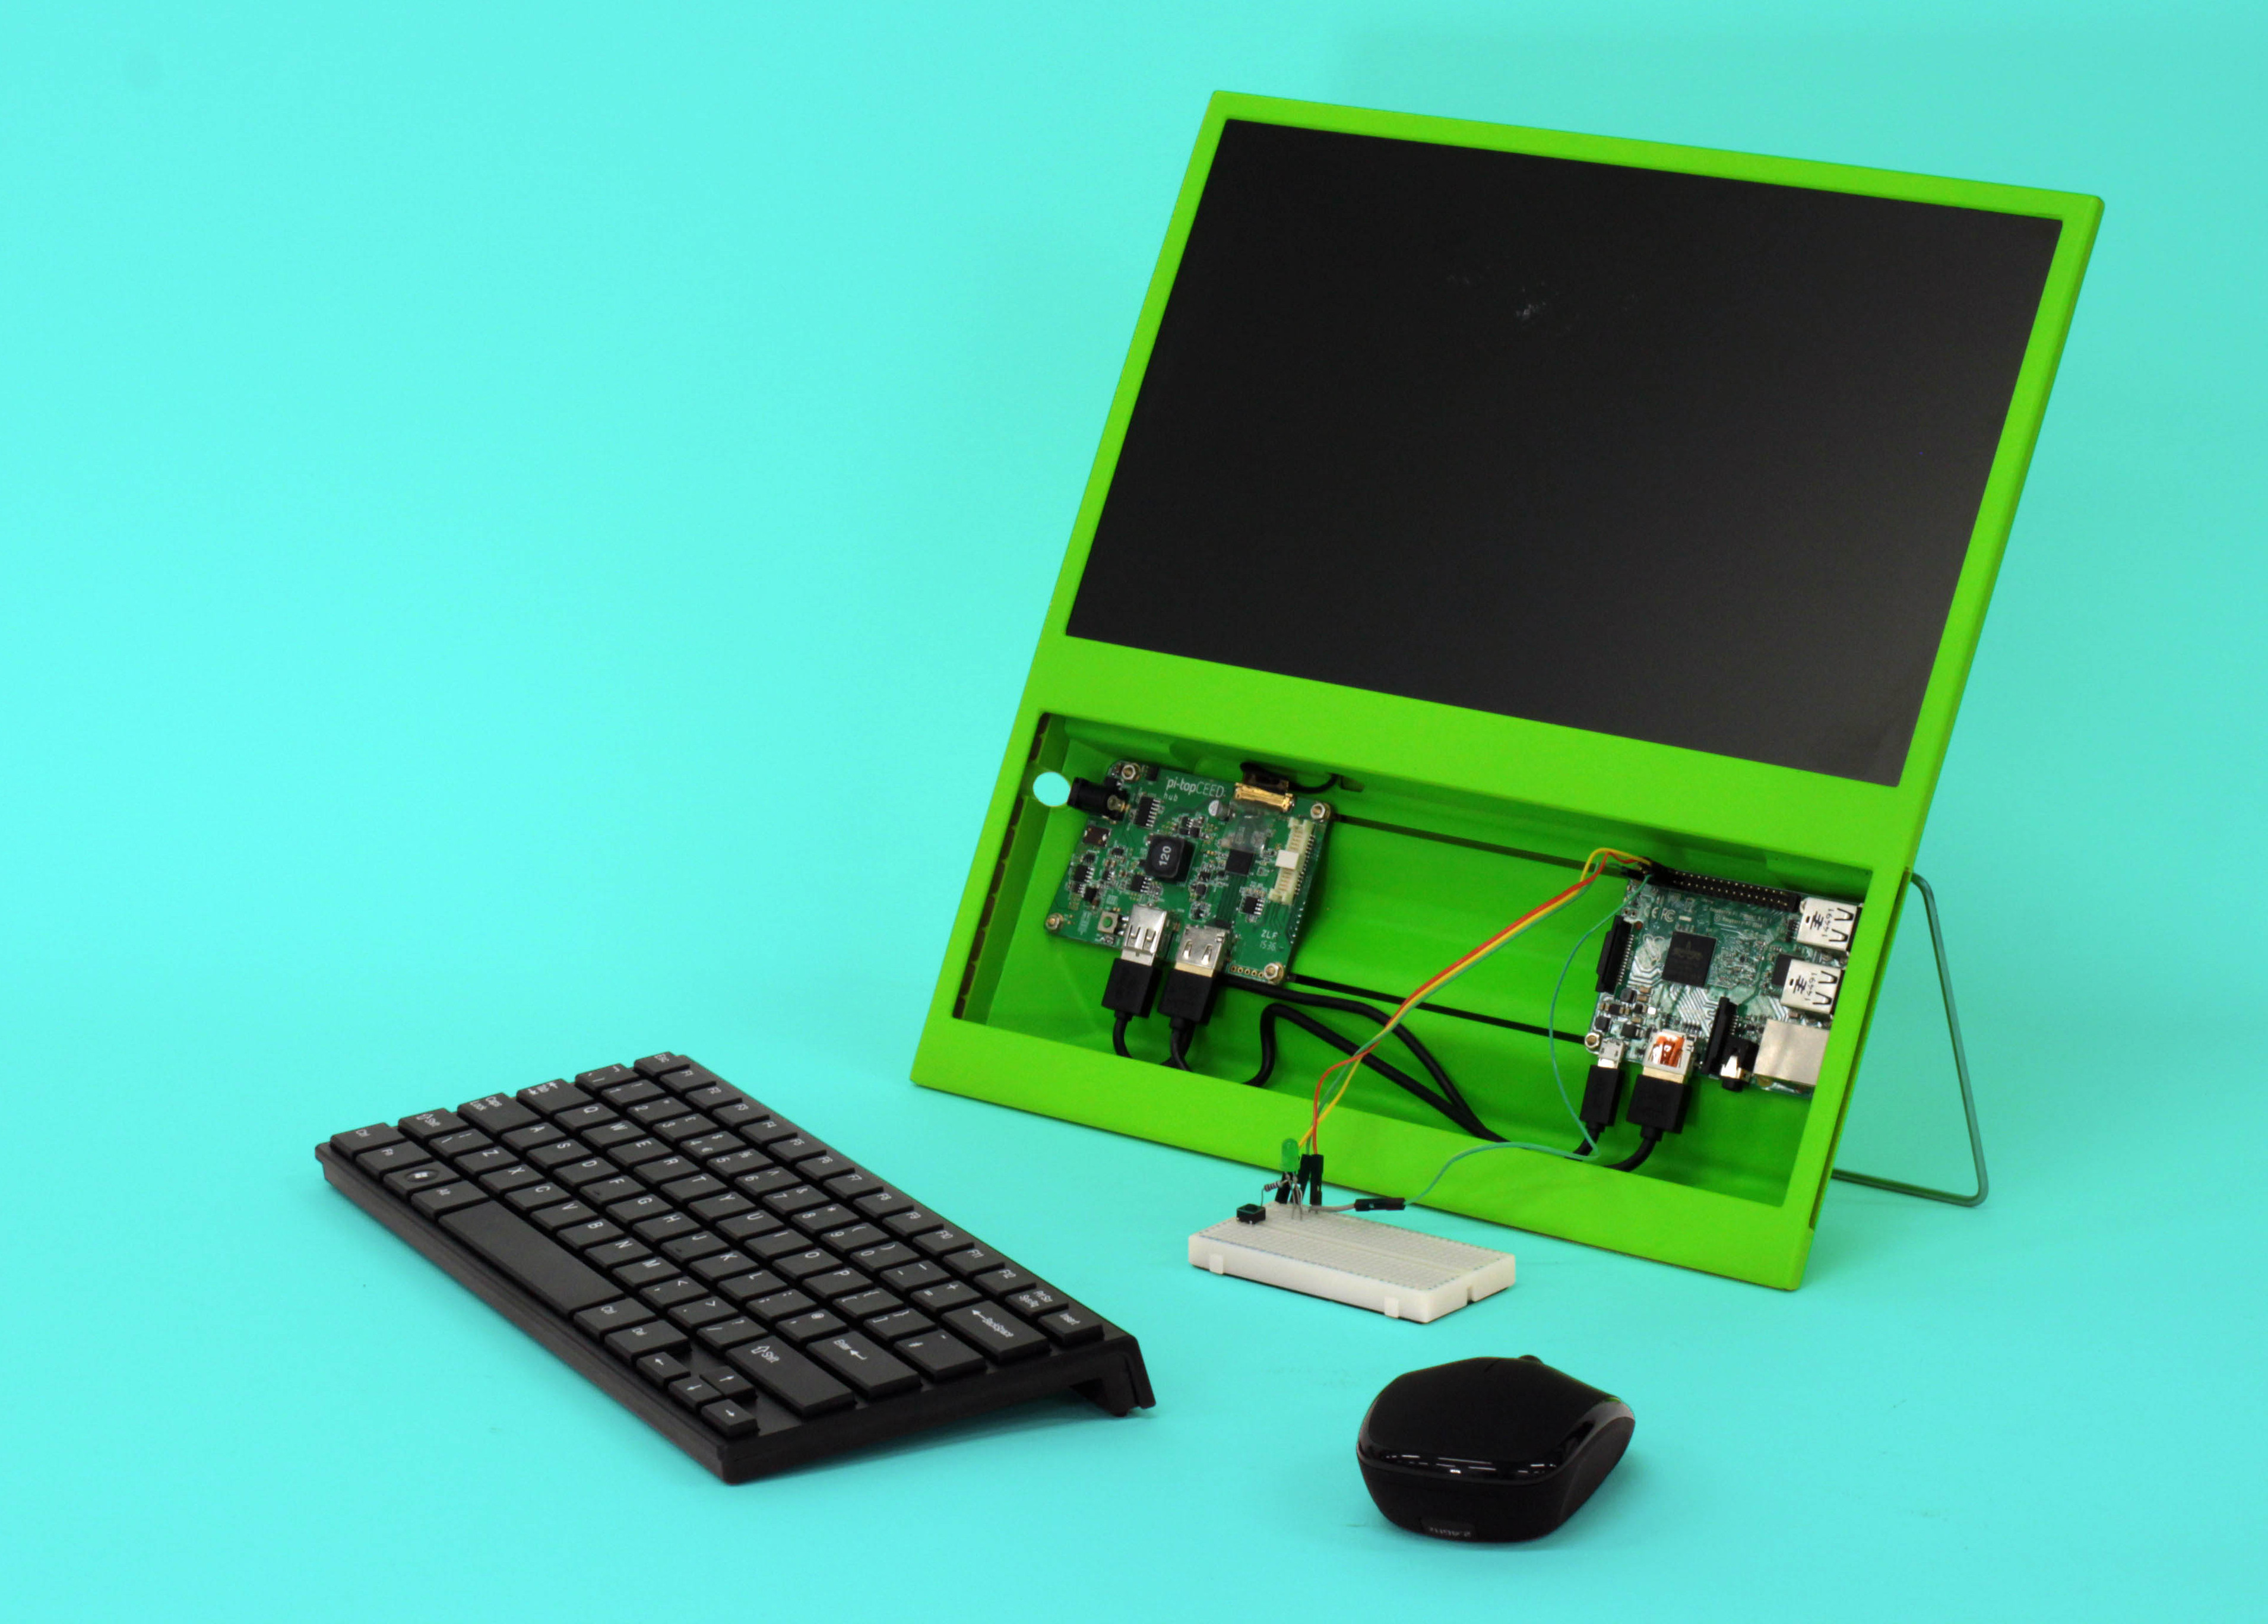 Pi-Top Goes to Indiegogo to Fund $99 Raspberry Pi Desktop ...